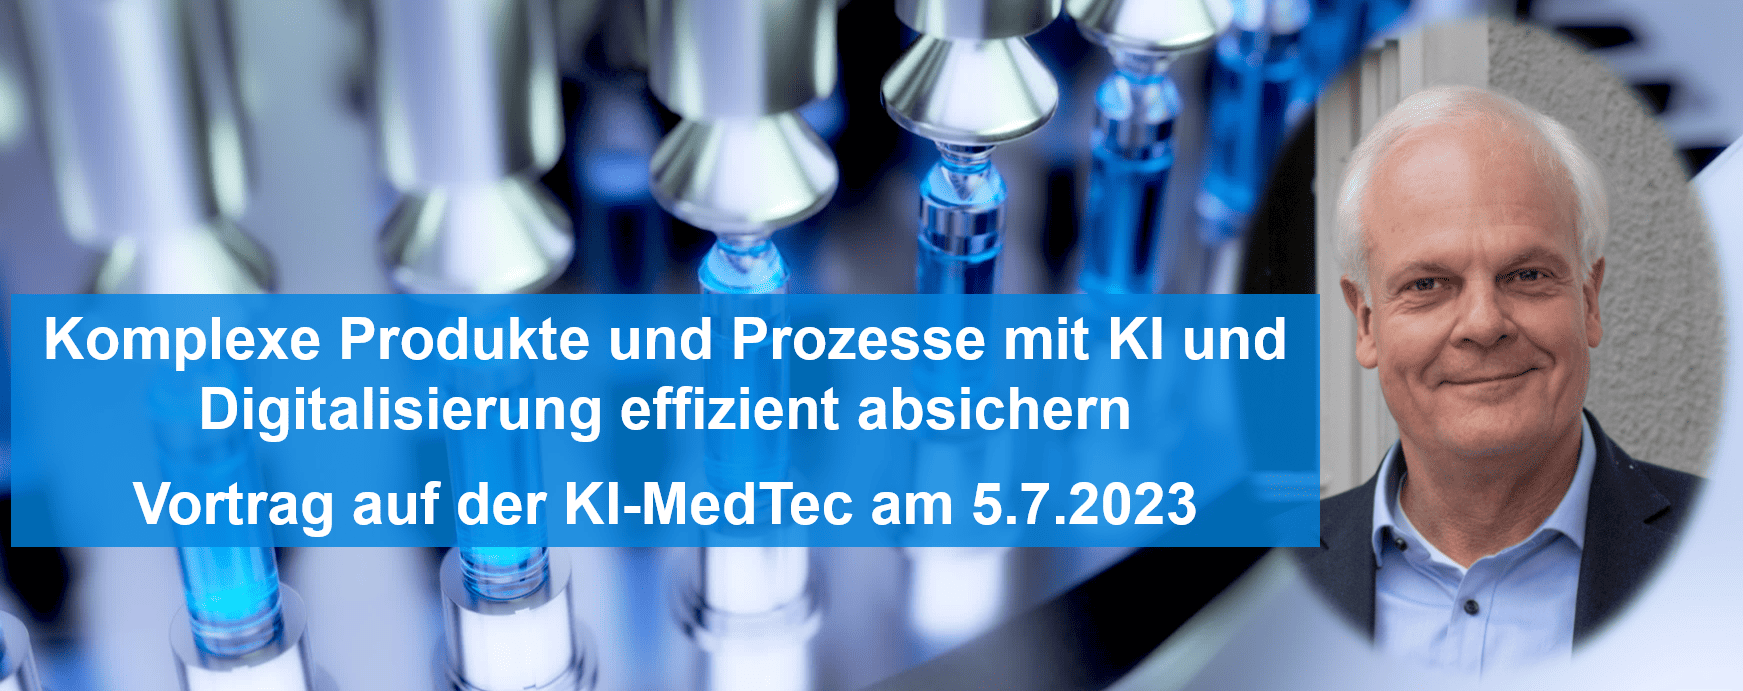 KI-MedTec 2023: Vortrag von Frank Thurner